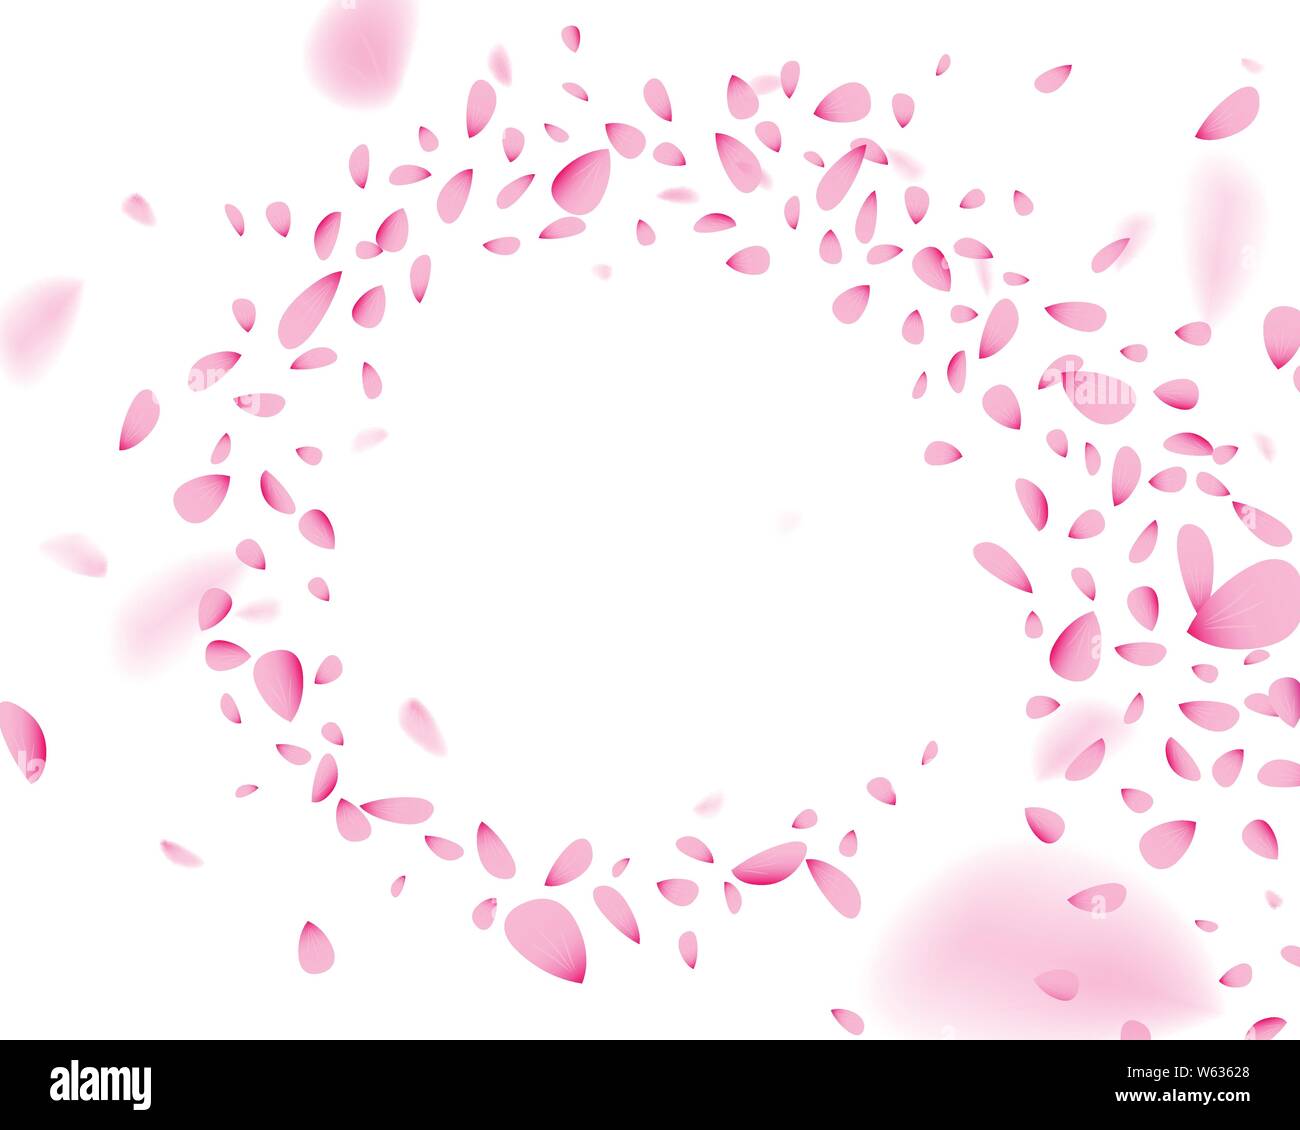 Rosa di vorticazione petali di fiori nel vento. Illustrazione Vettoriale